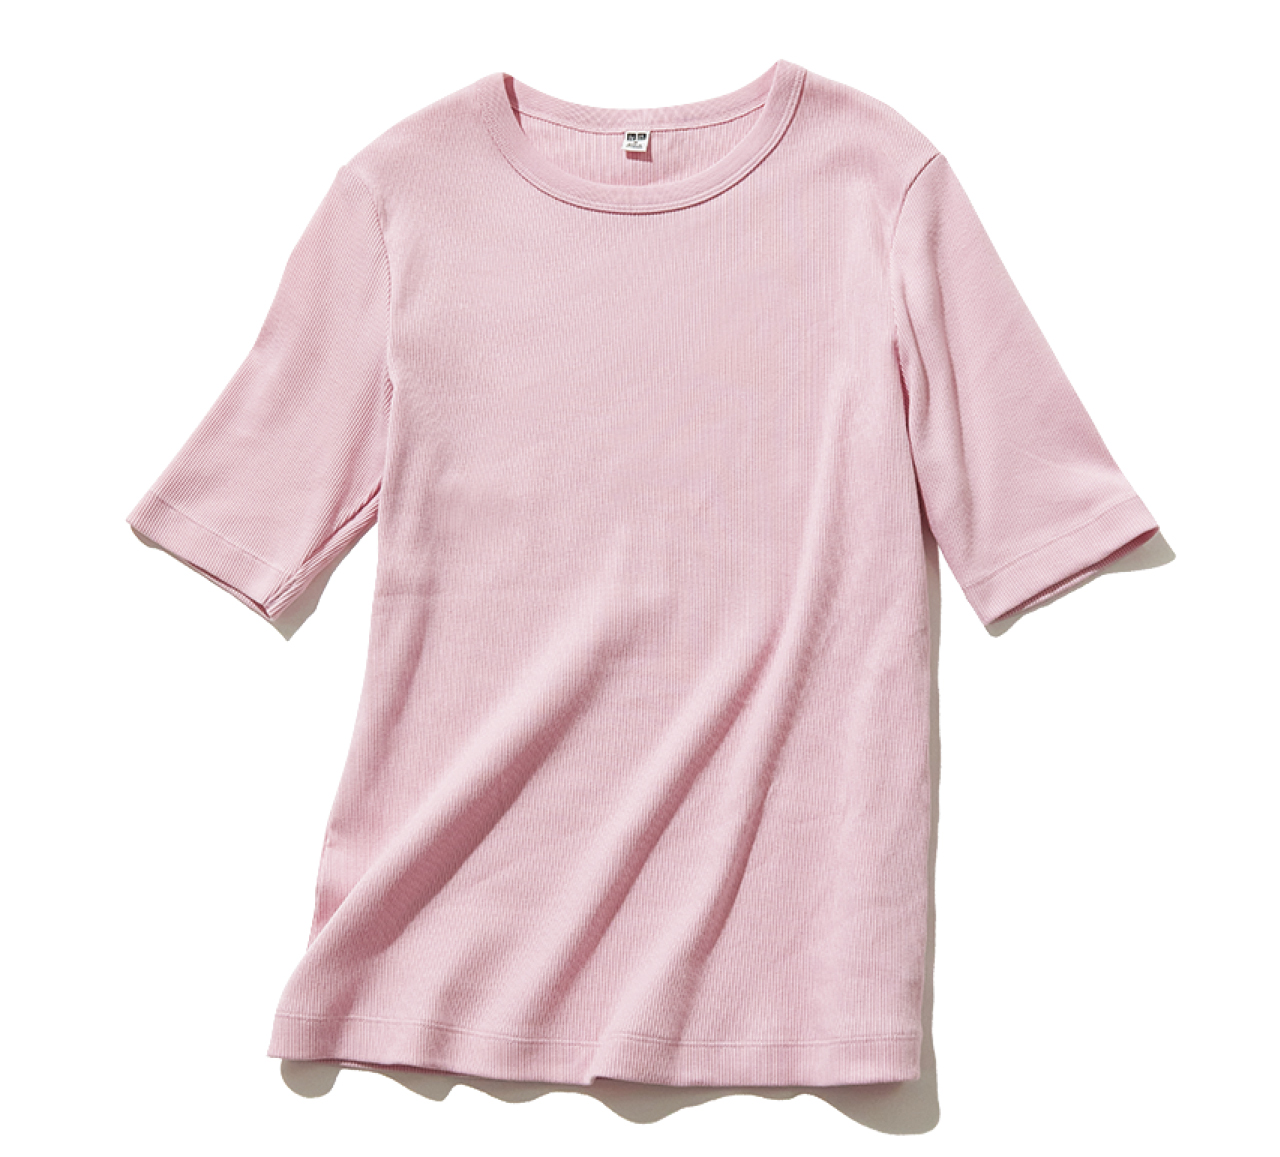 ユニクロのピンクTシャツ